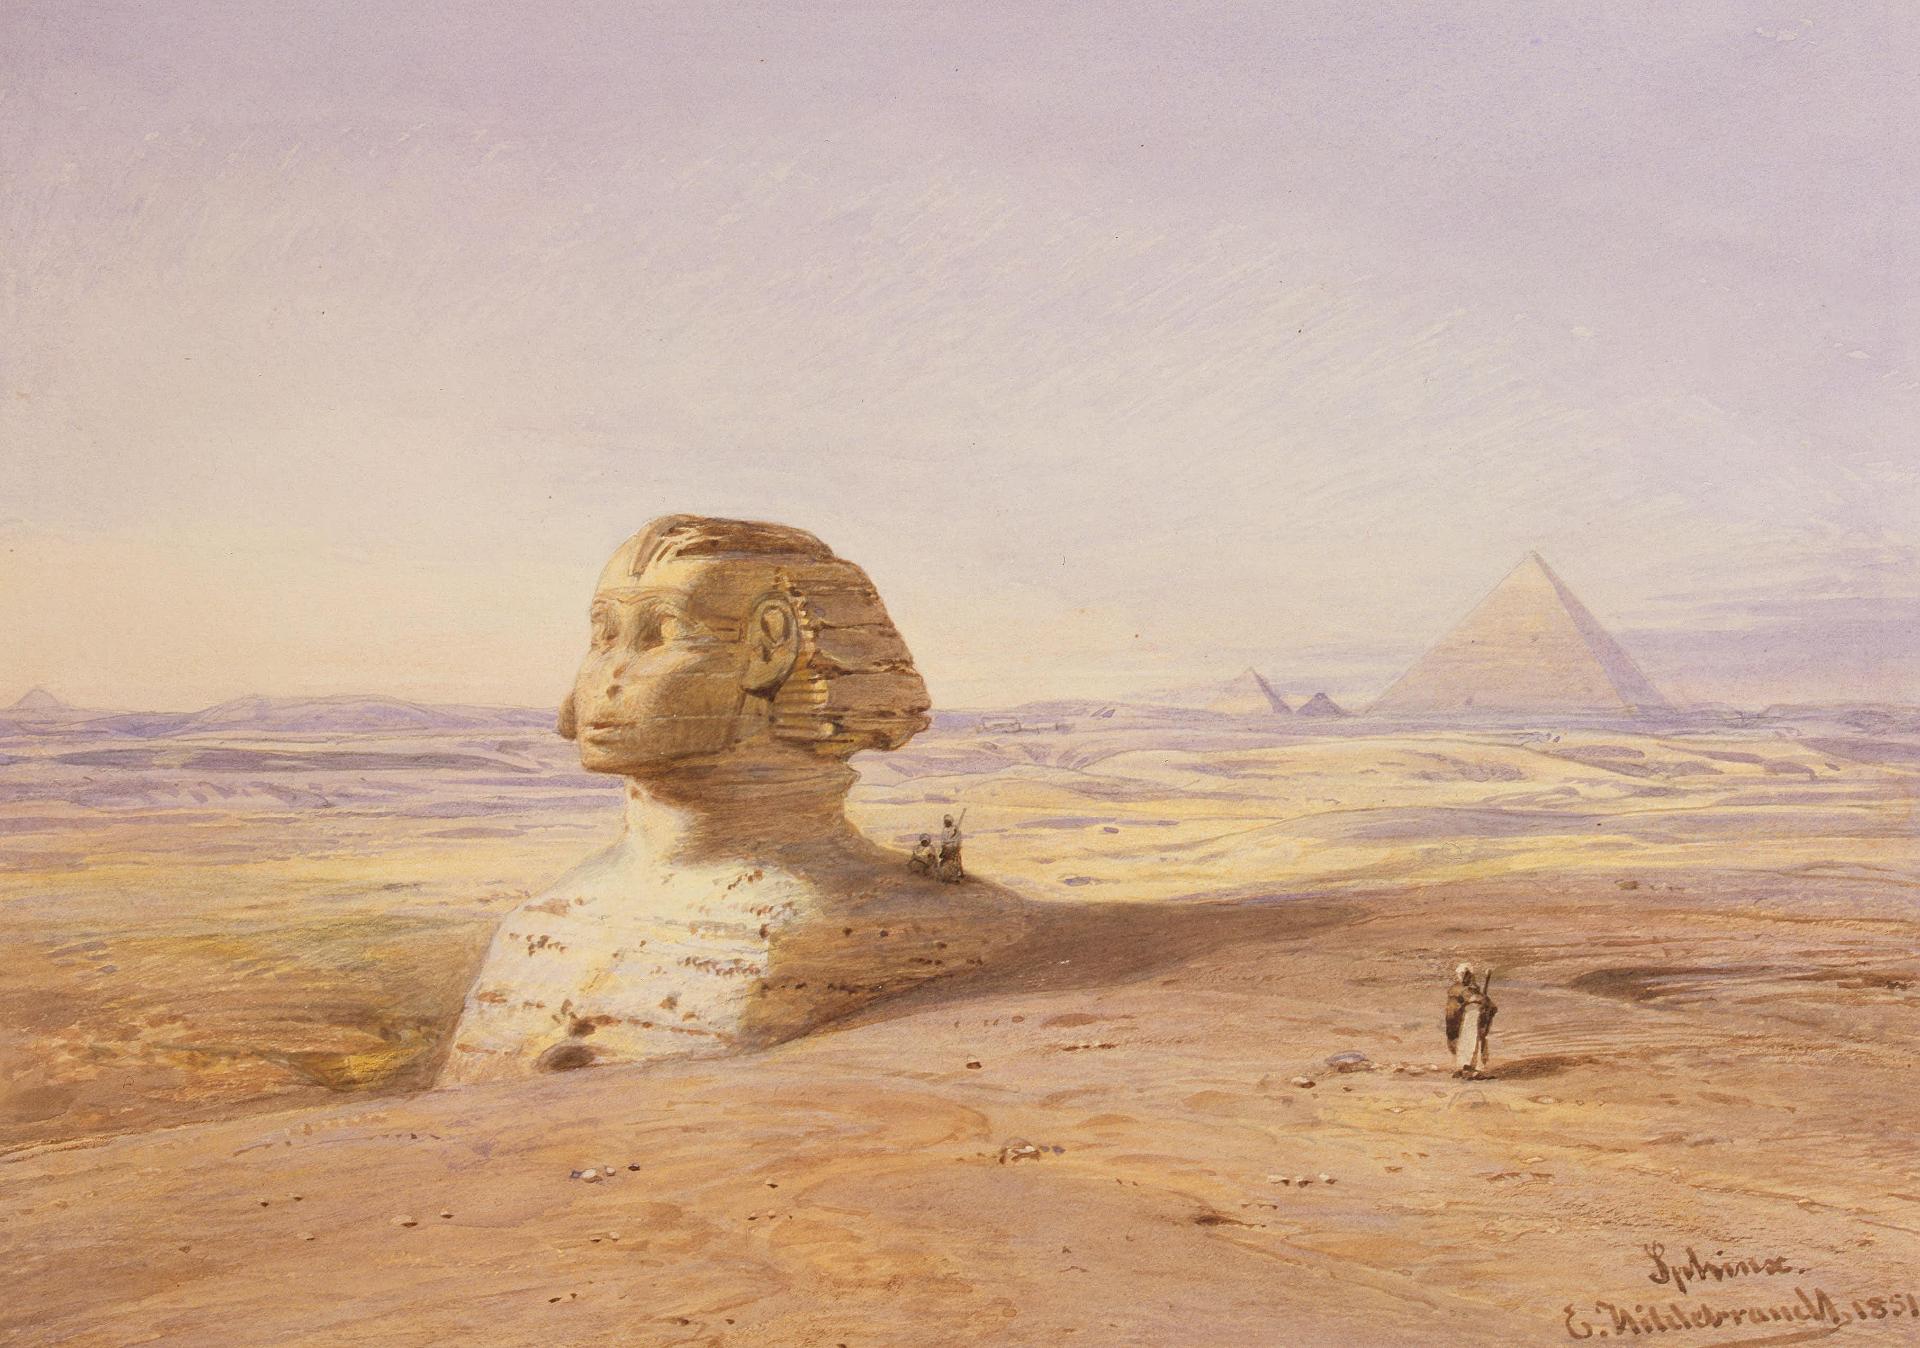 Эдуард Хильдебрандт. "Большой Сфинкс Гизы на фоне пирамид". 1851.